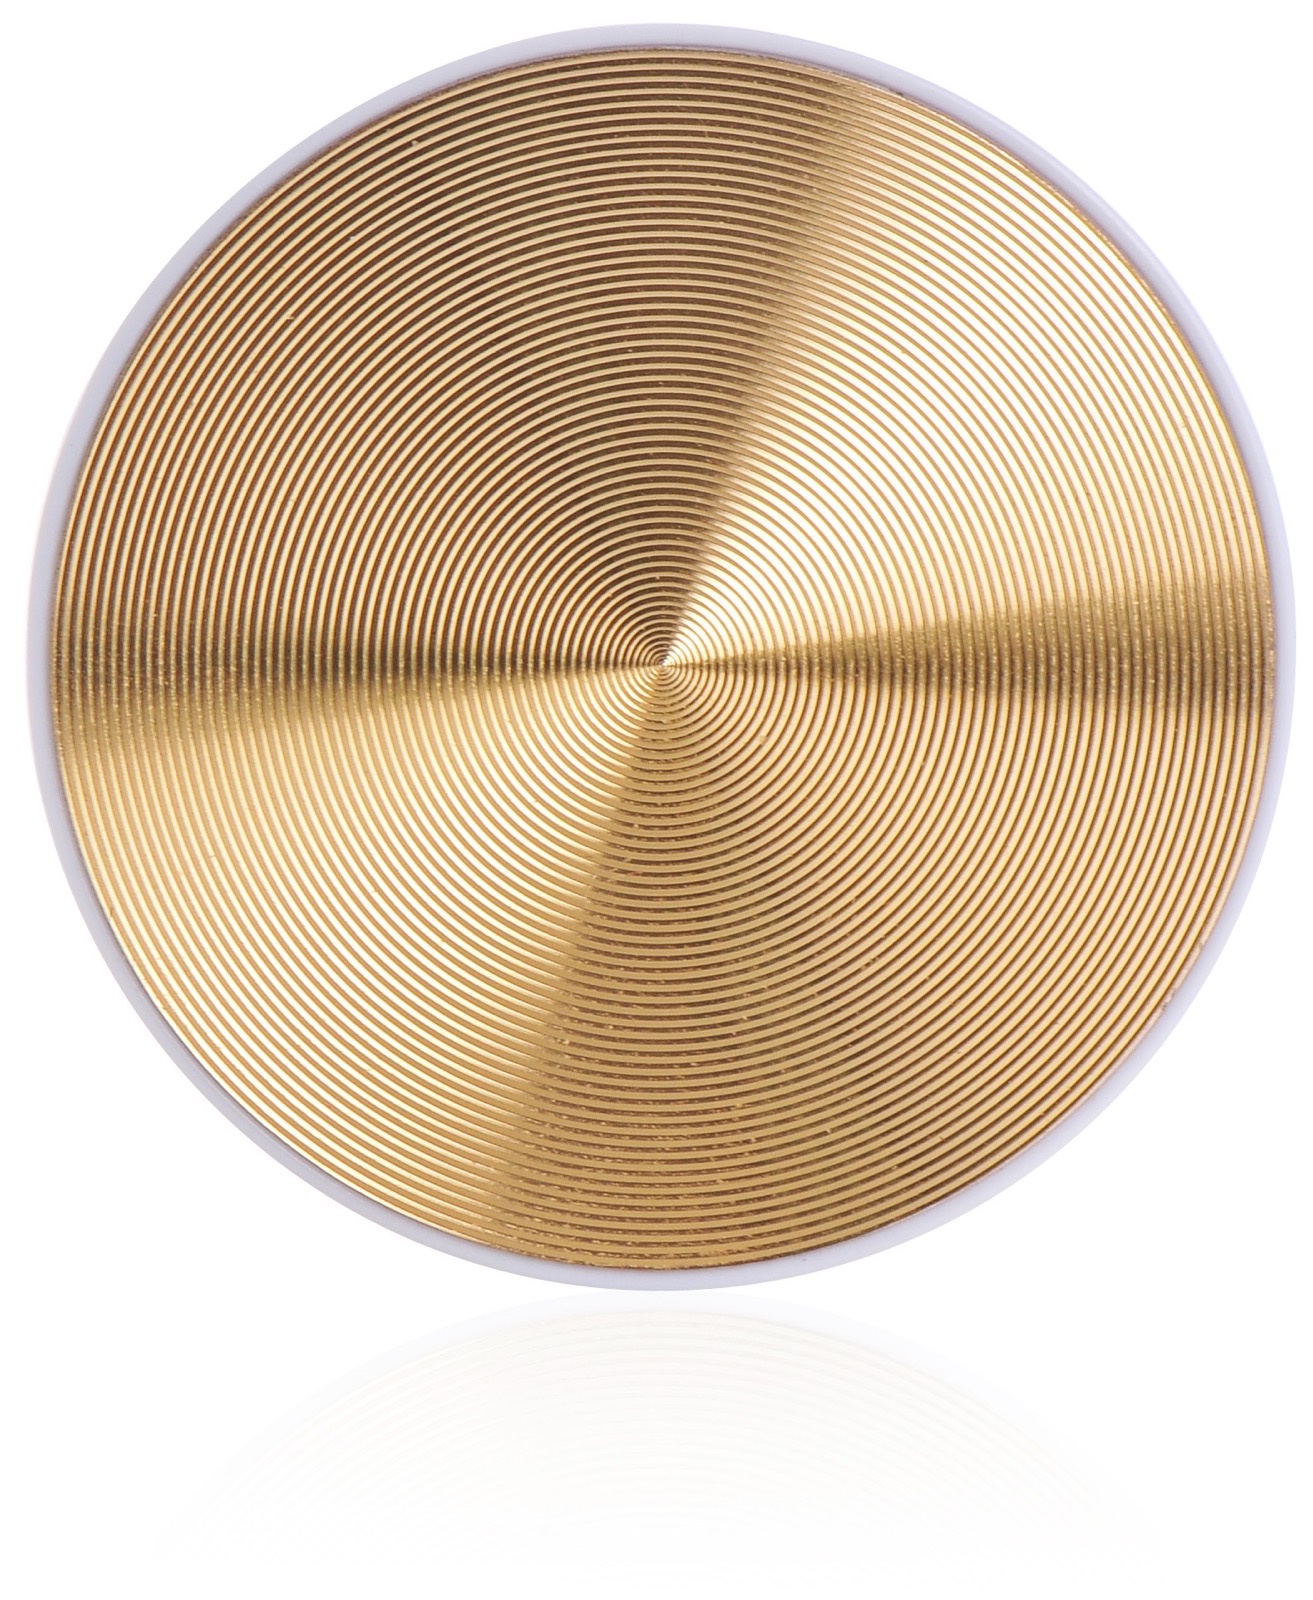 фото Кольцо-держатель для телефона Gurdini Classic Stile gold попсокет, золотой